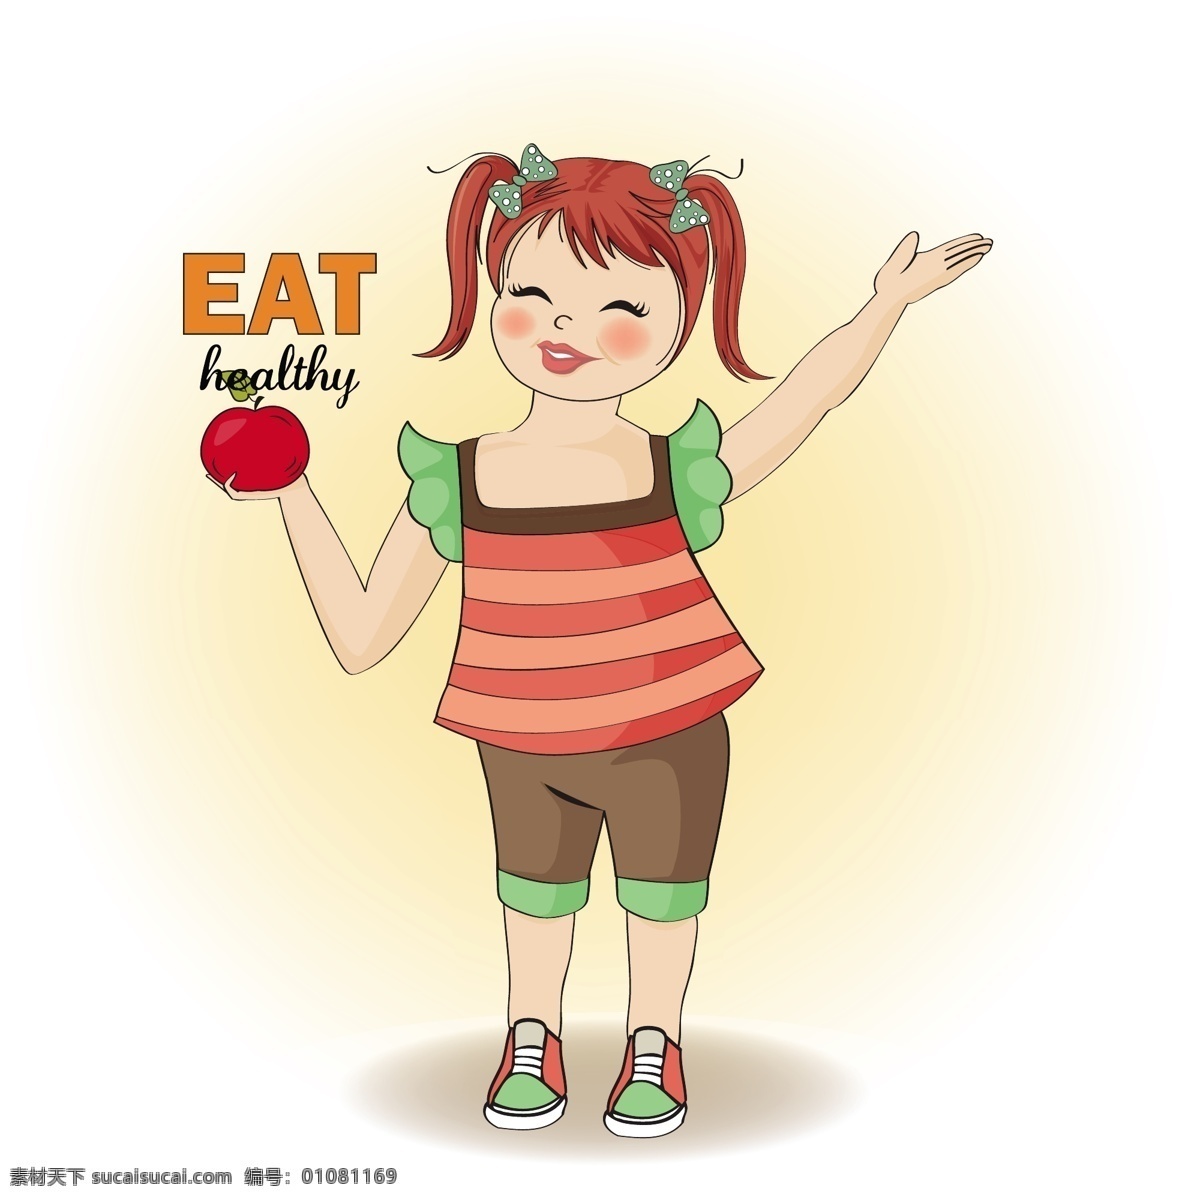 健康的食物 背景 食物 鱼 手绘 健康 涂鸦 蔬菜 水果 素描 烹饪 绘画 肉类 早餐 晚餐 午餐 营养 饮食